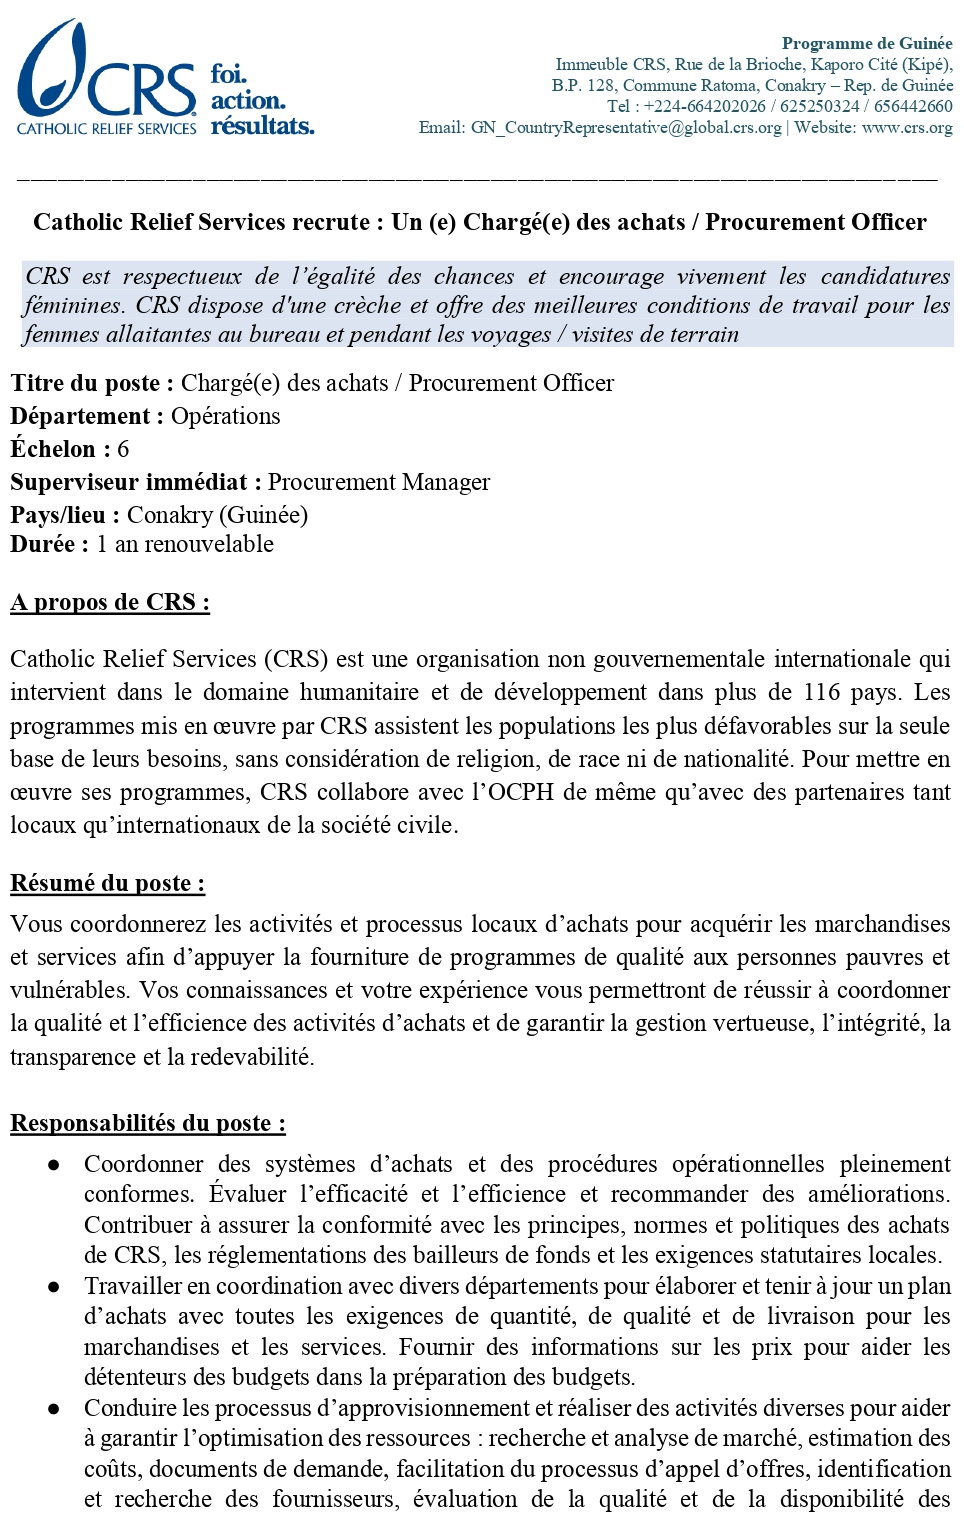 Recrutement D'un(e) Chargé(e) Des Achats/Procurement Officer | page 1